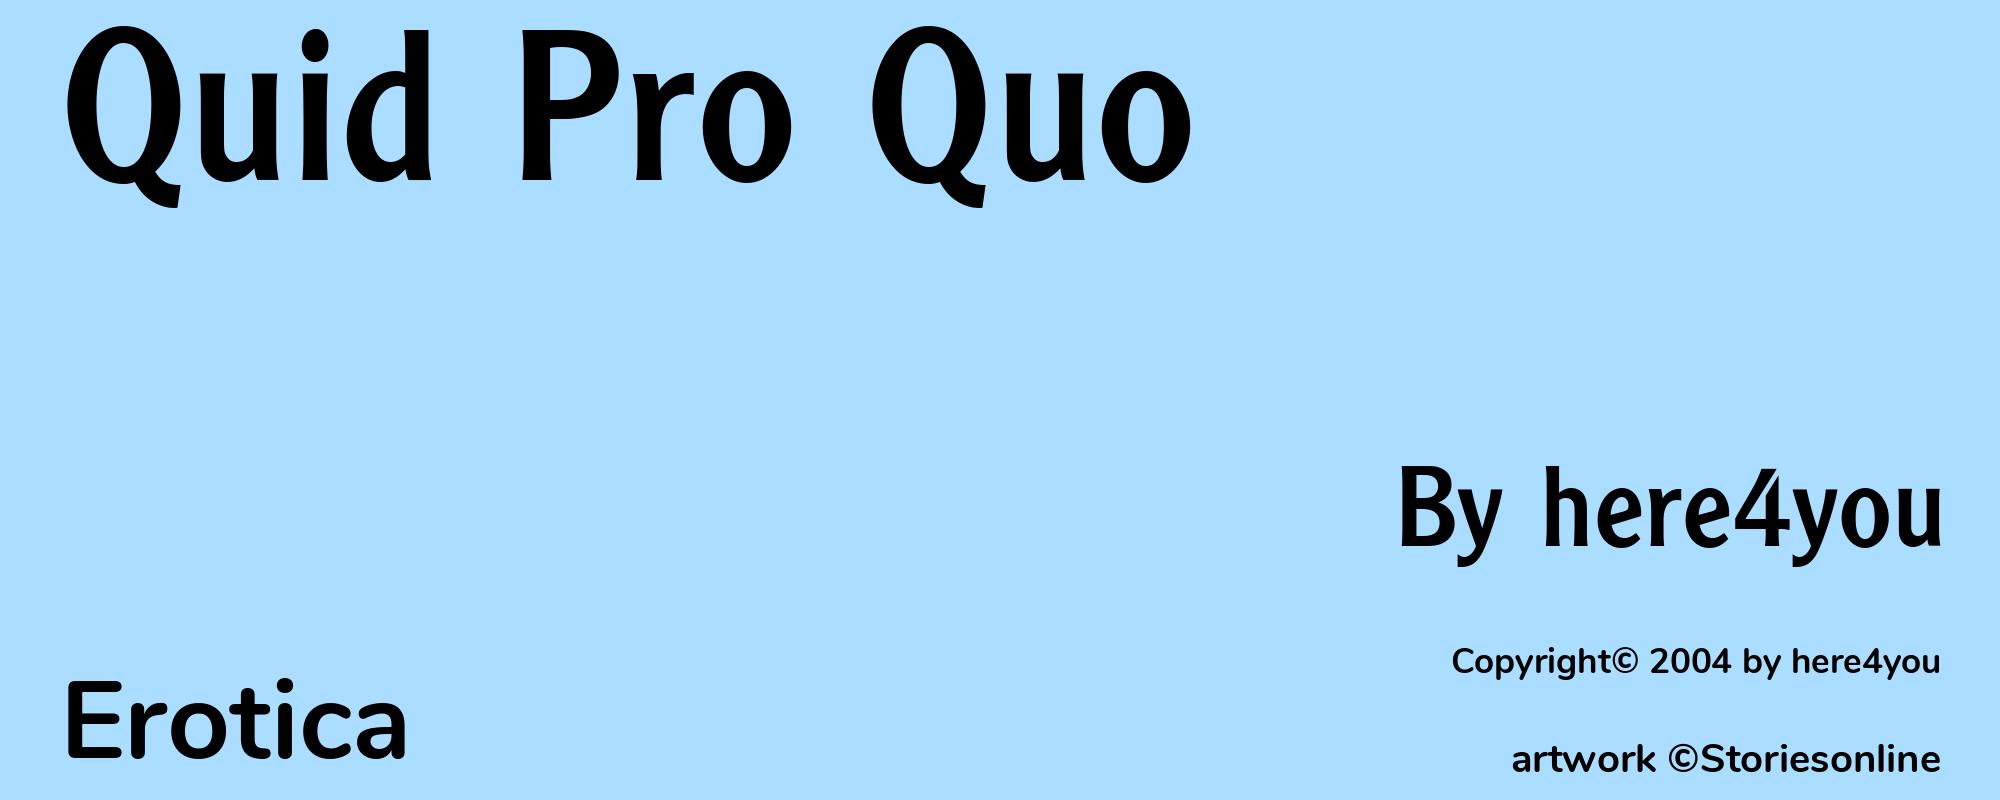 Quid Pro Quo - Cover